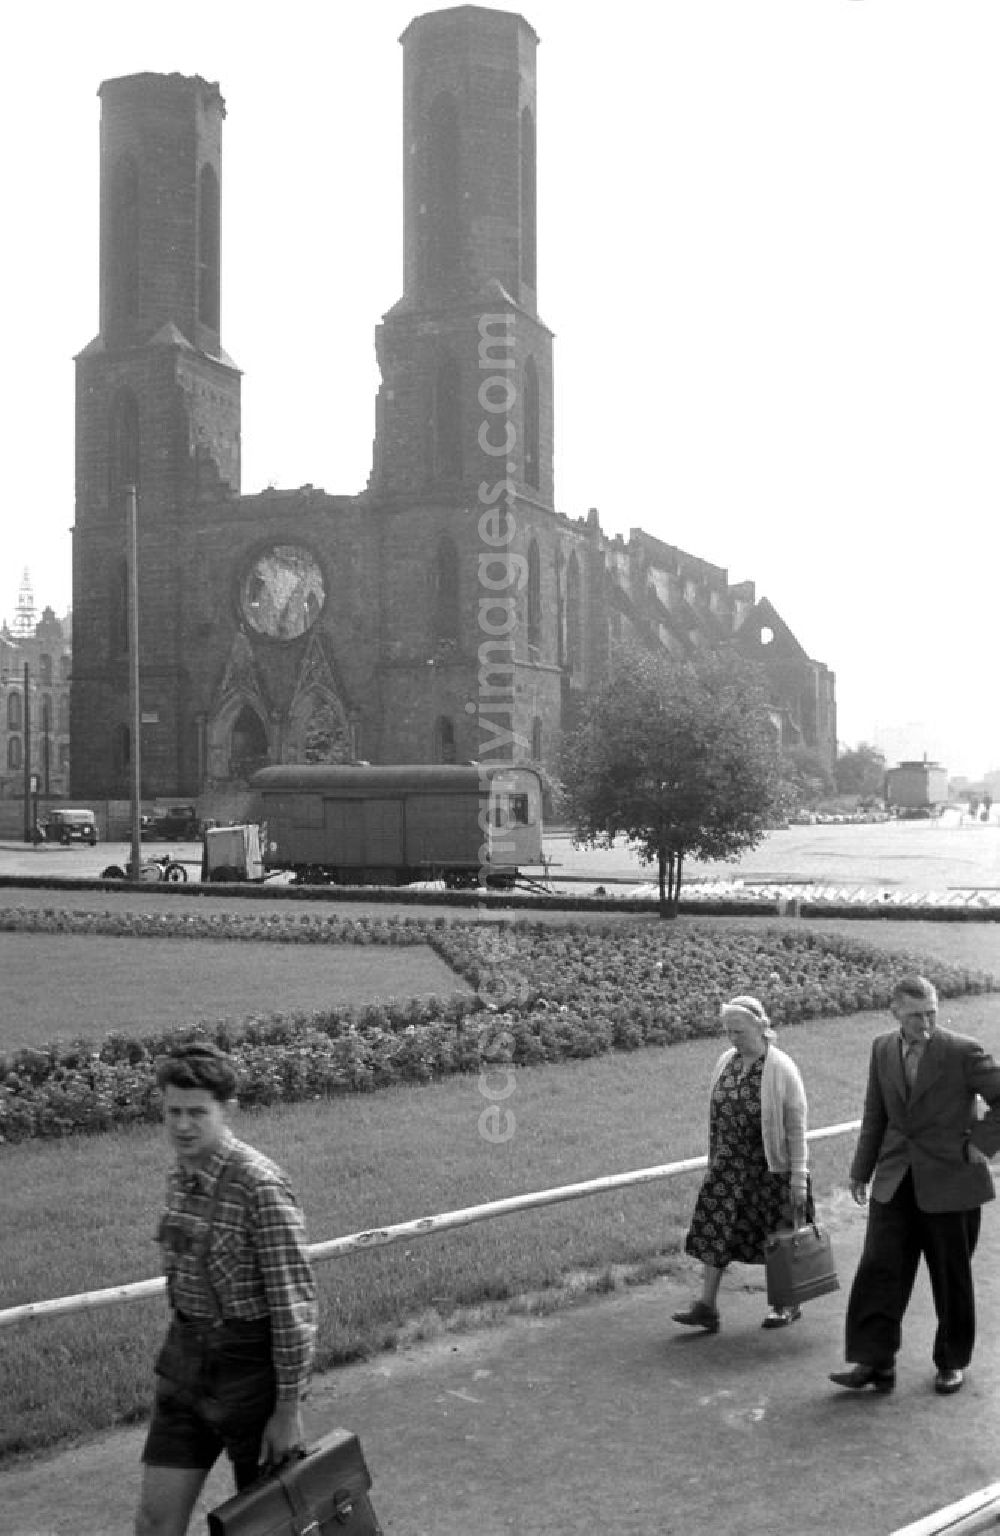 GDR image archive: Dresden - Blick auf die Ruine der Dresdner Sophienkirche. Während der Luftangriffe auf Dresden im Zweiten Weltkrieg 1945 stark beschädigt, wurde die Sophienkirche in der DDR nicht wieder aufgebaut und trotz zahlreicher Proteste 1962 abgerissen.